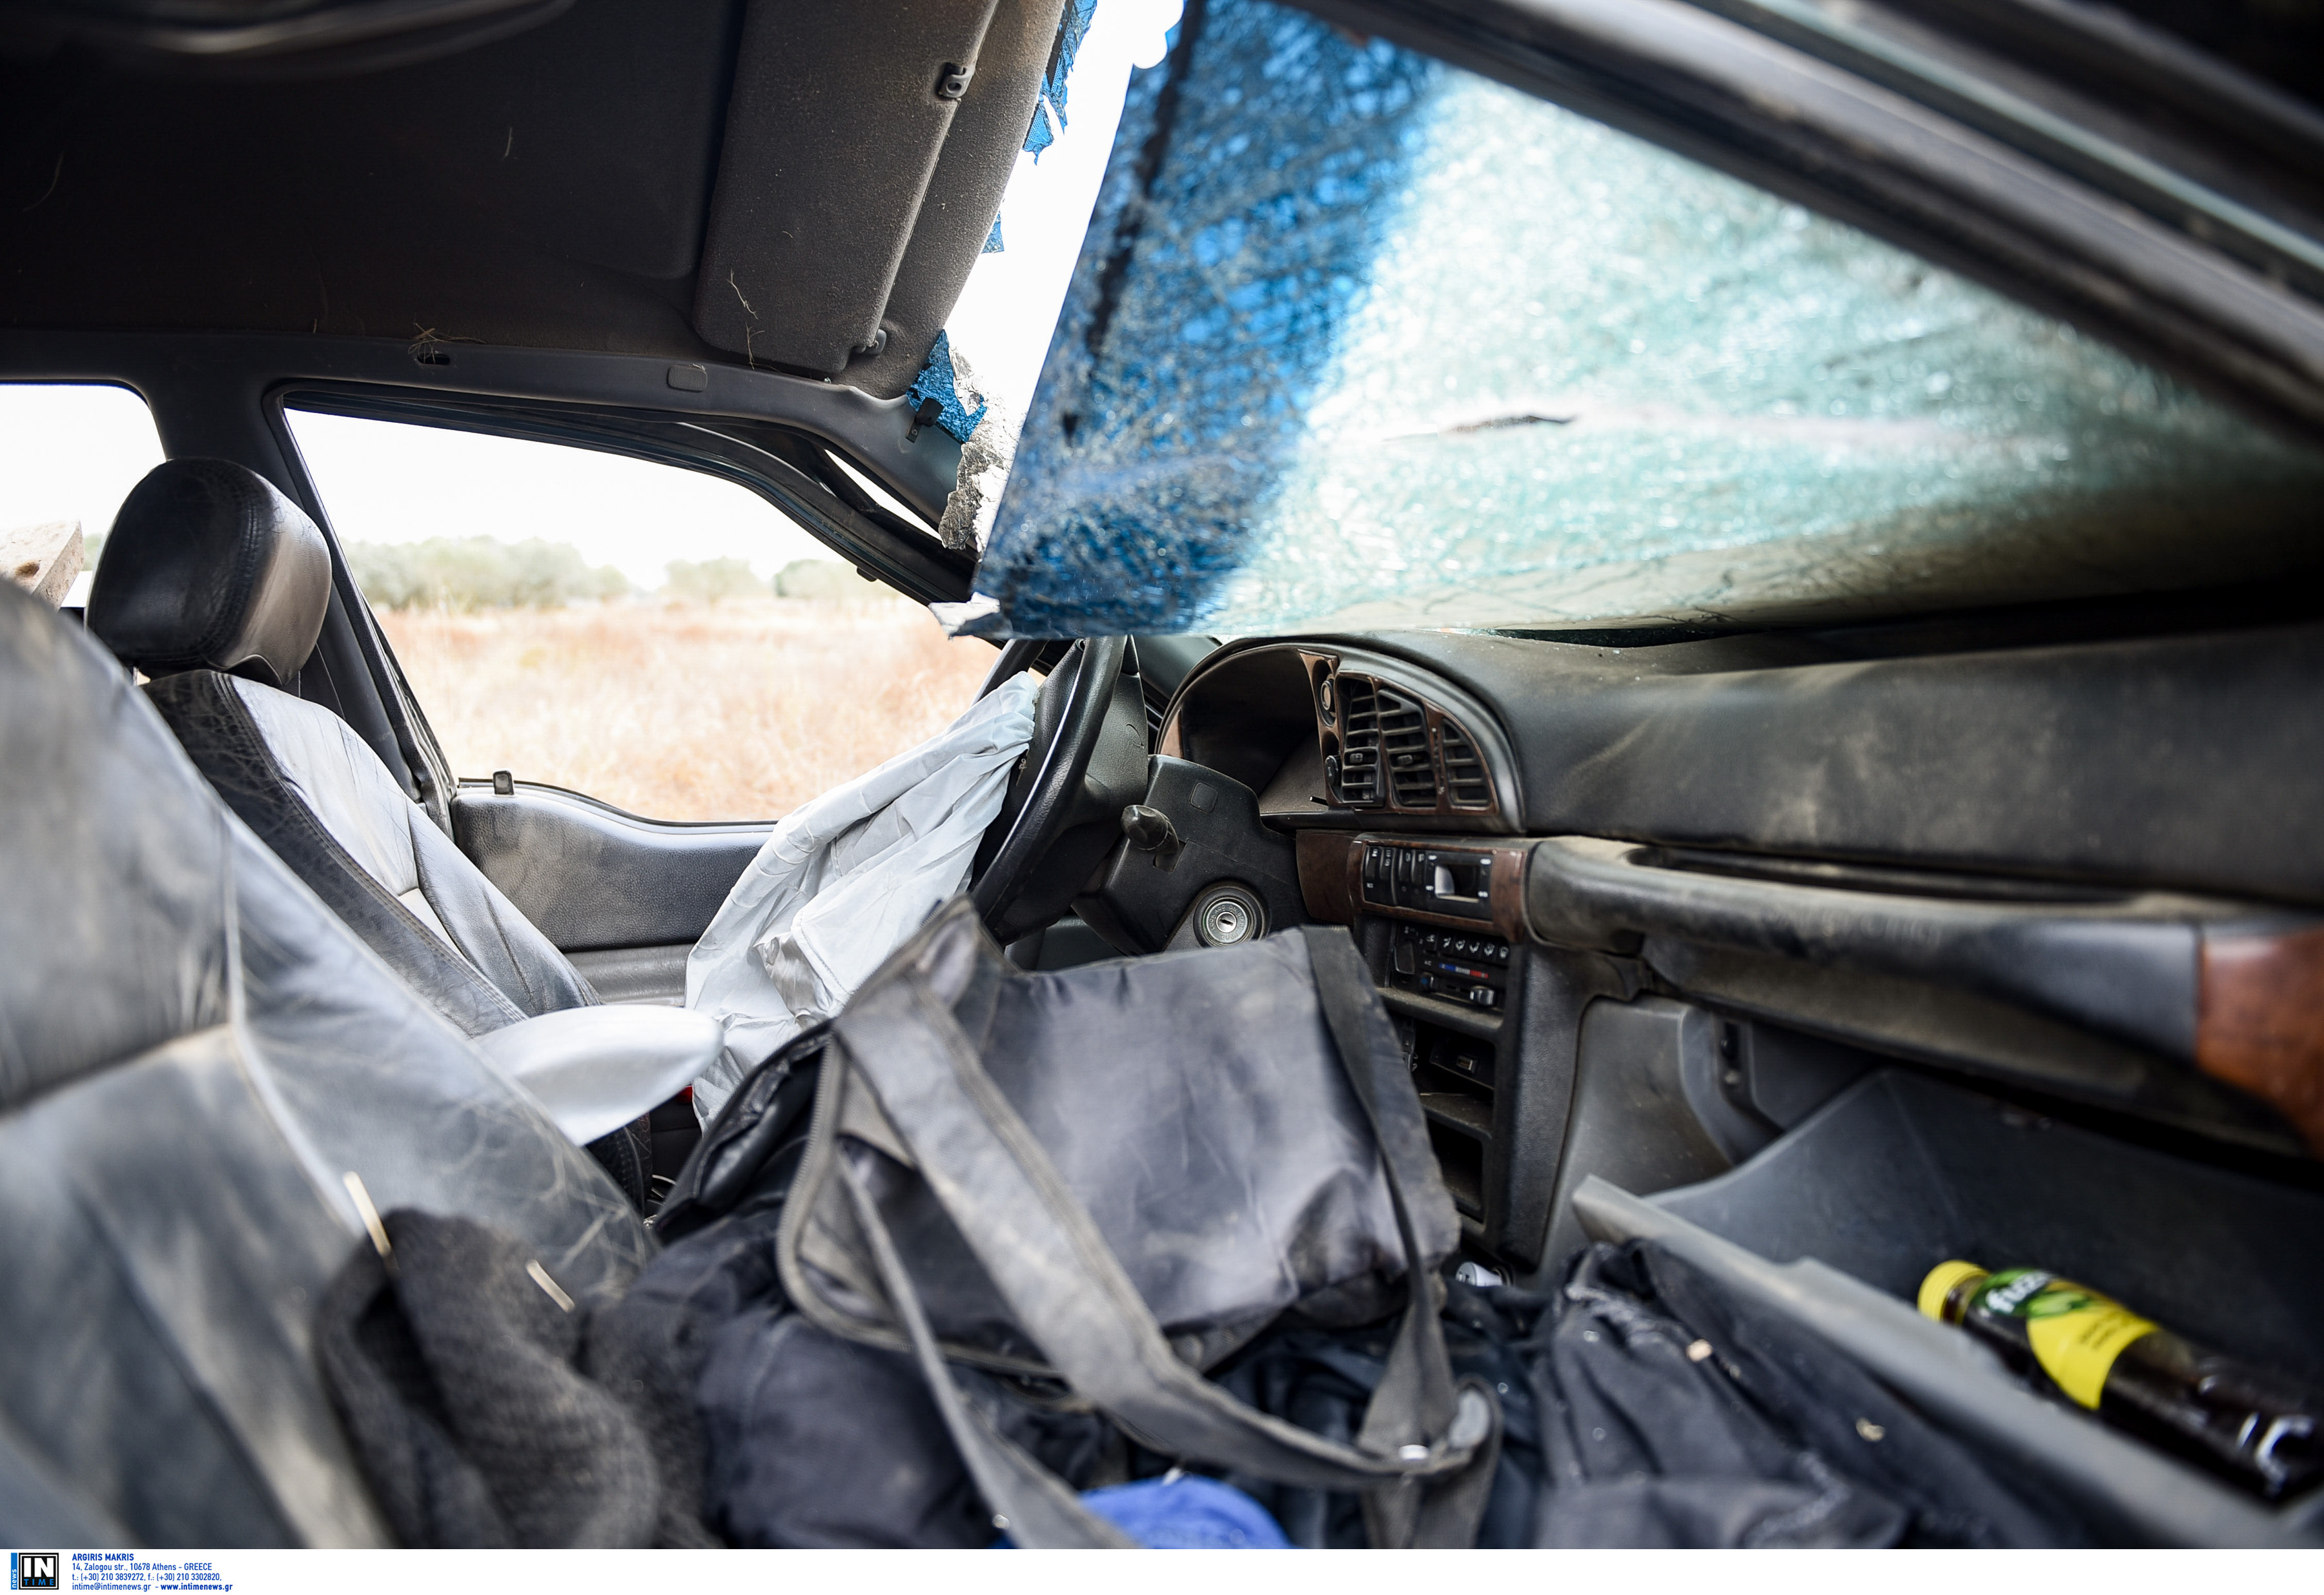 Κορονοϊός: Πήρε εξιτήριο και παραλίγο να σκοτωθεί με το αυτοκίνητό του